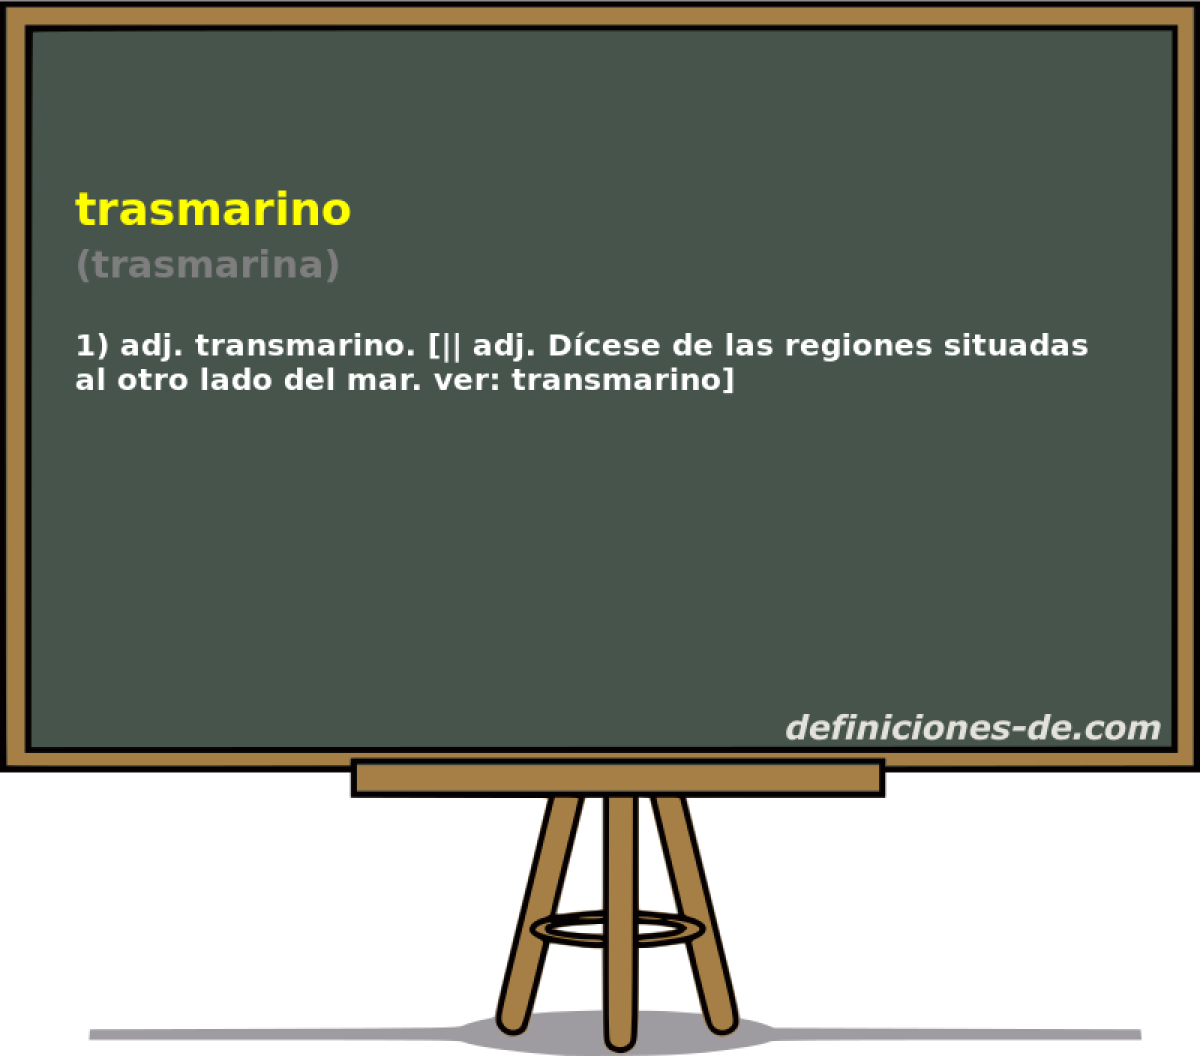 trasmarino (trasmarina)